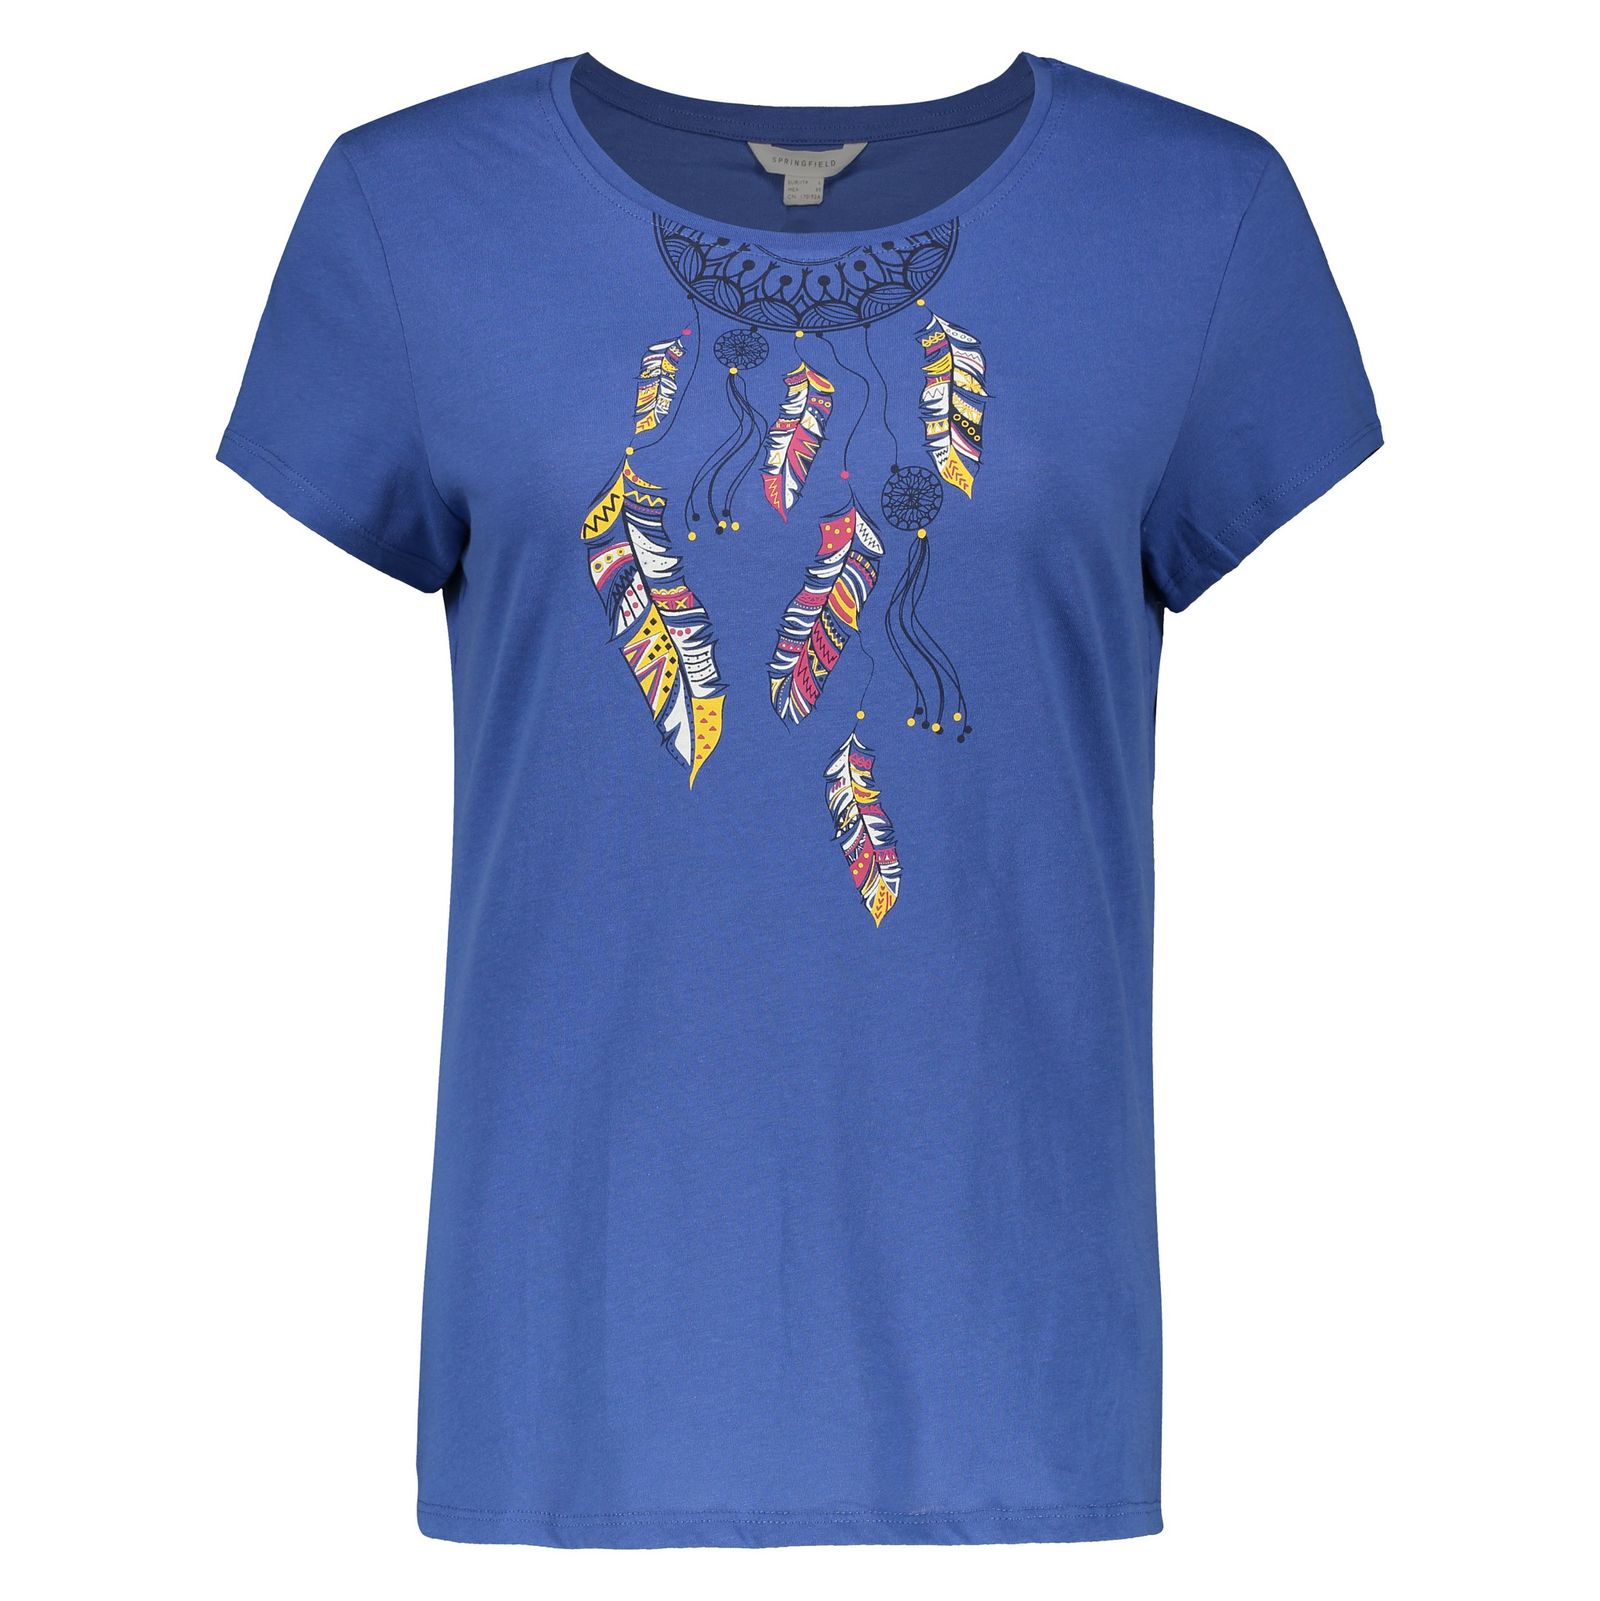 تی شرت زنانه اسپرینگ فیلد مدل 1383531-Blue - آبی - 2